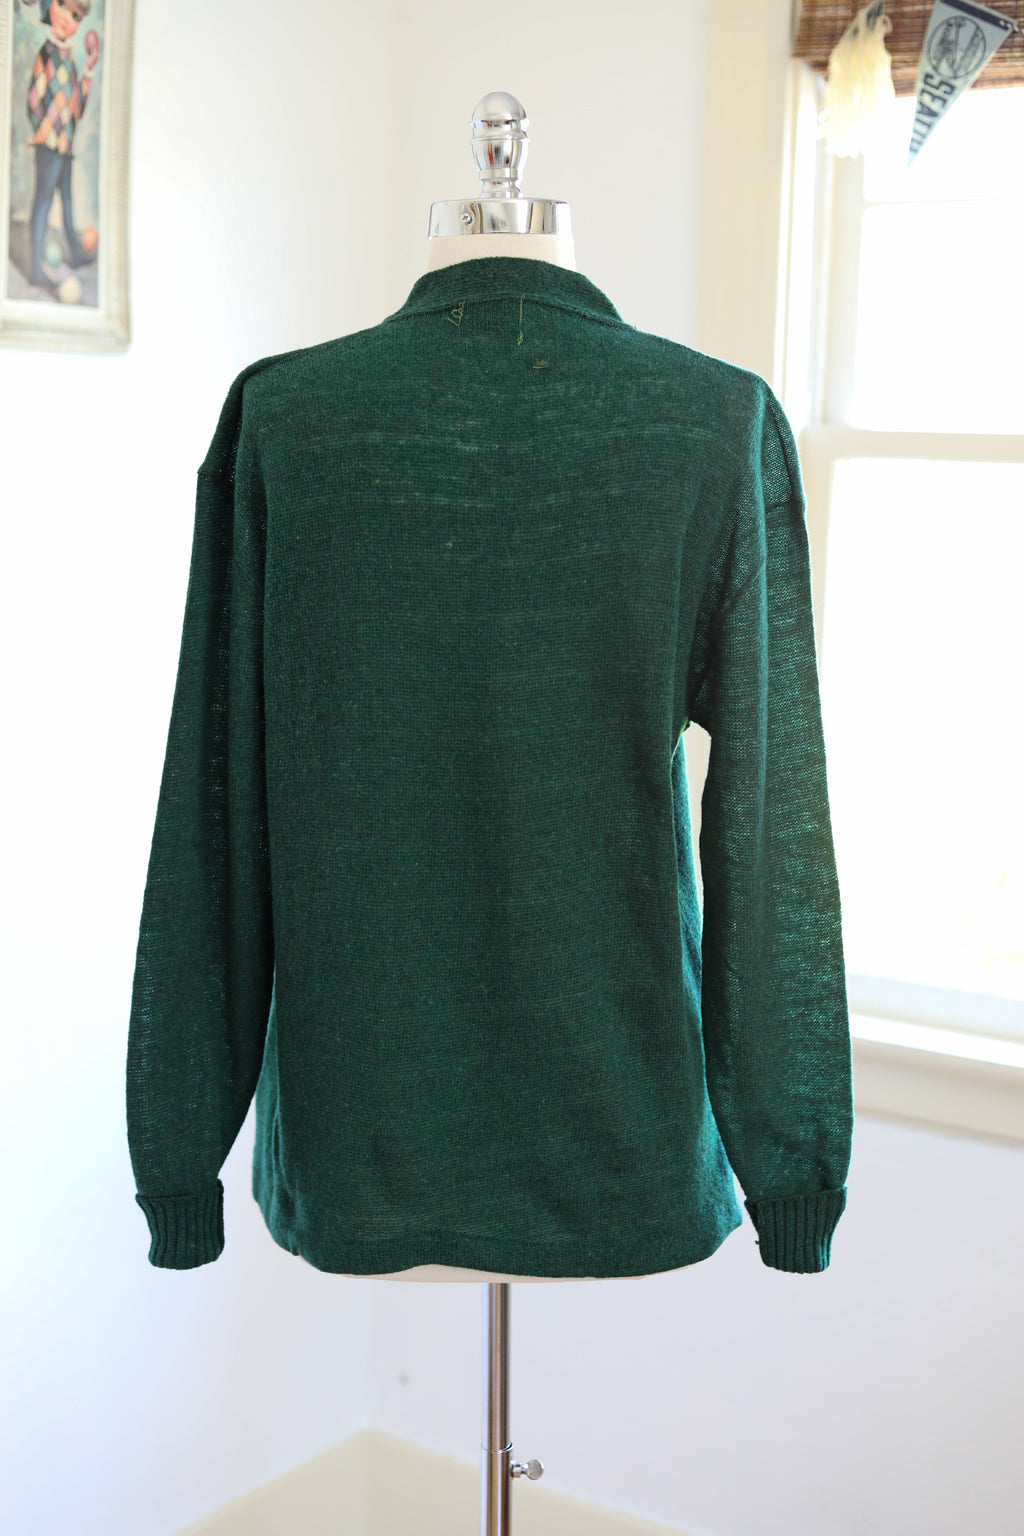 Vintage DEADSTOCK 1940s Knit Cardigan - Pine Green All-Wool Lambswool Sporty Knitwear Sweater w Pockets - Choose Yours!